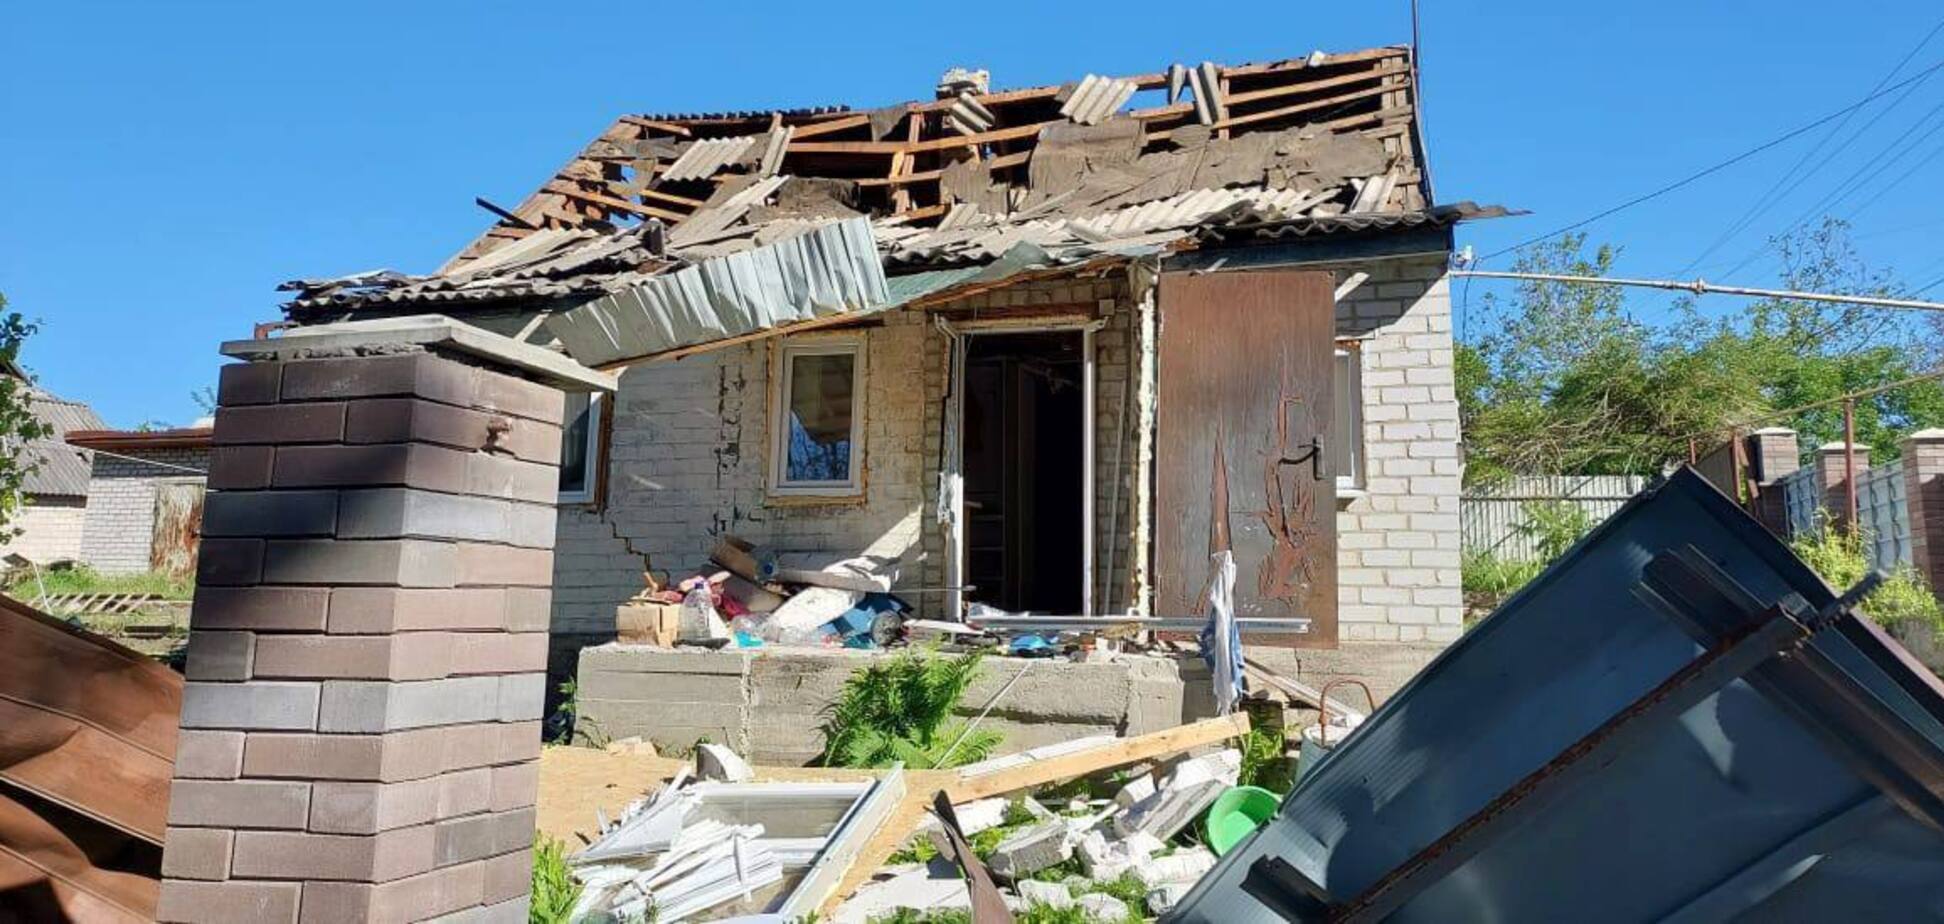 В Кировоградской области в результате атаки РФ поврежден объект критической инфраструктуры: пострадал 8-летний ребенок